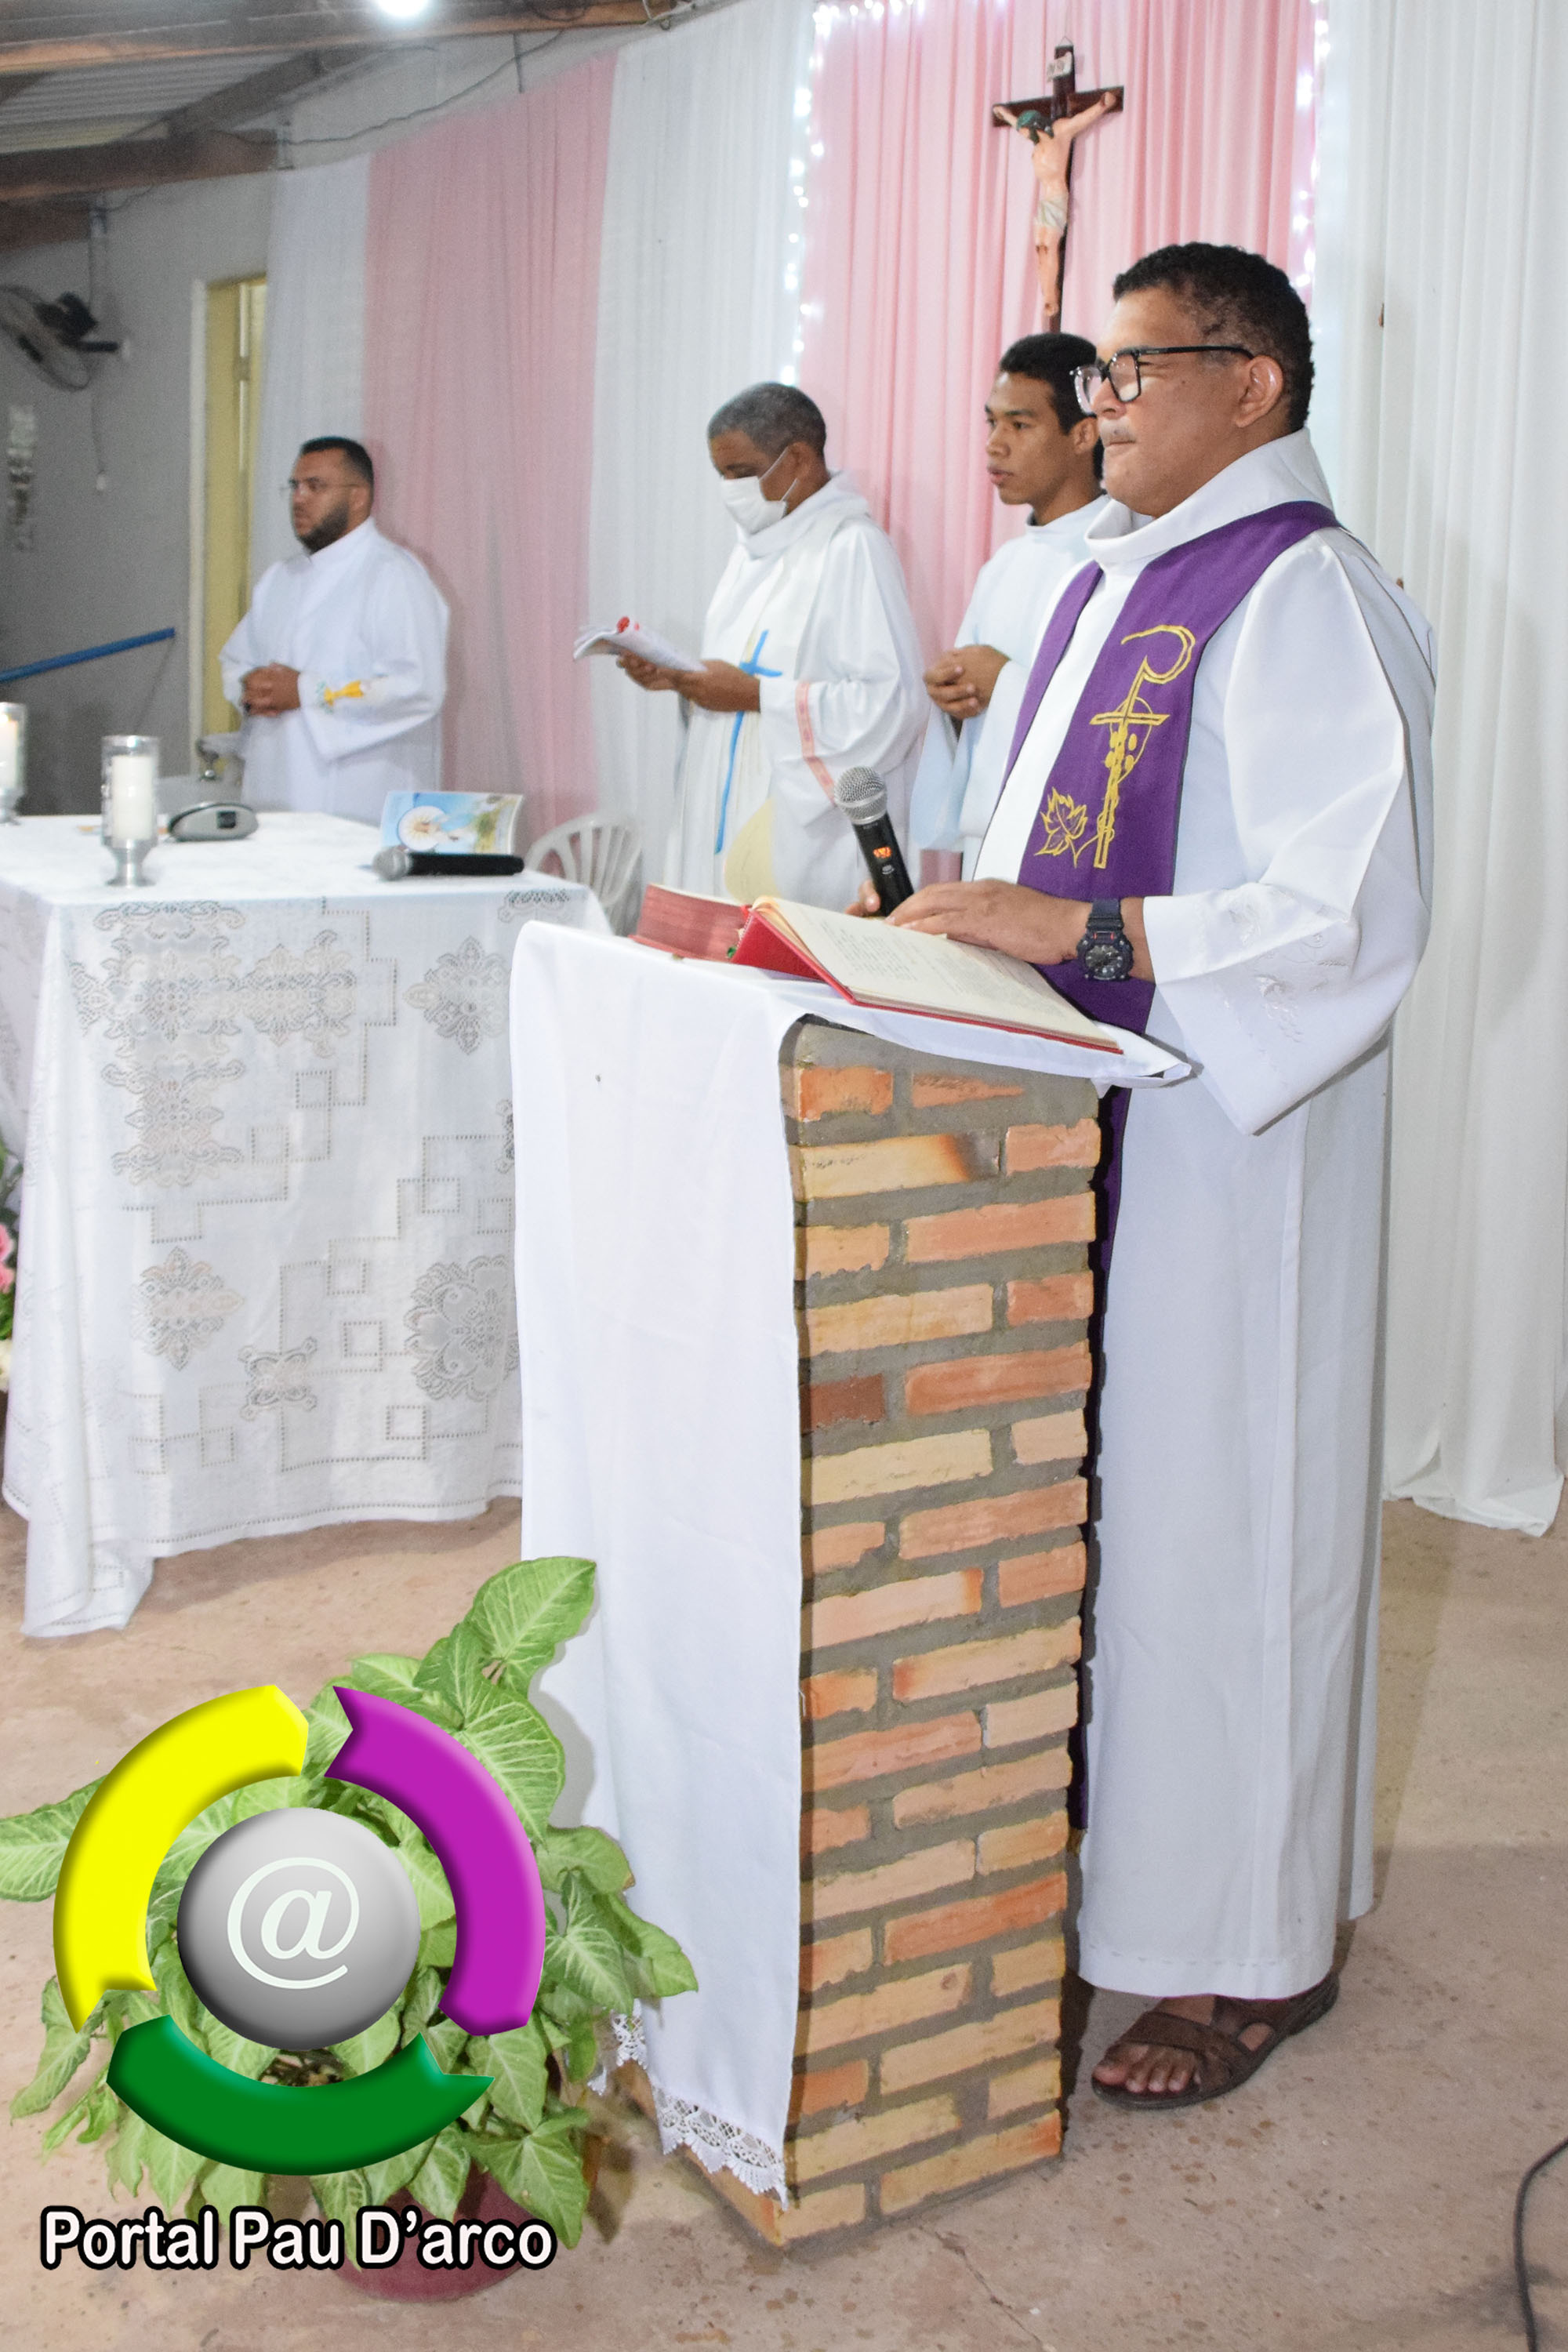 Início o Tríduo em honra a Nossa Senhora da Conceição em Pau D’arco do Piauí